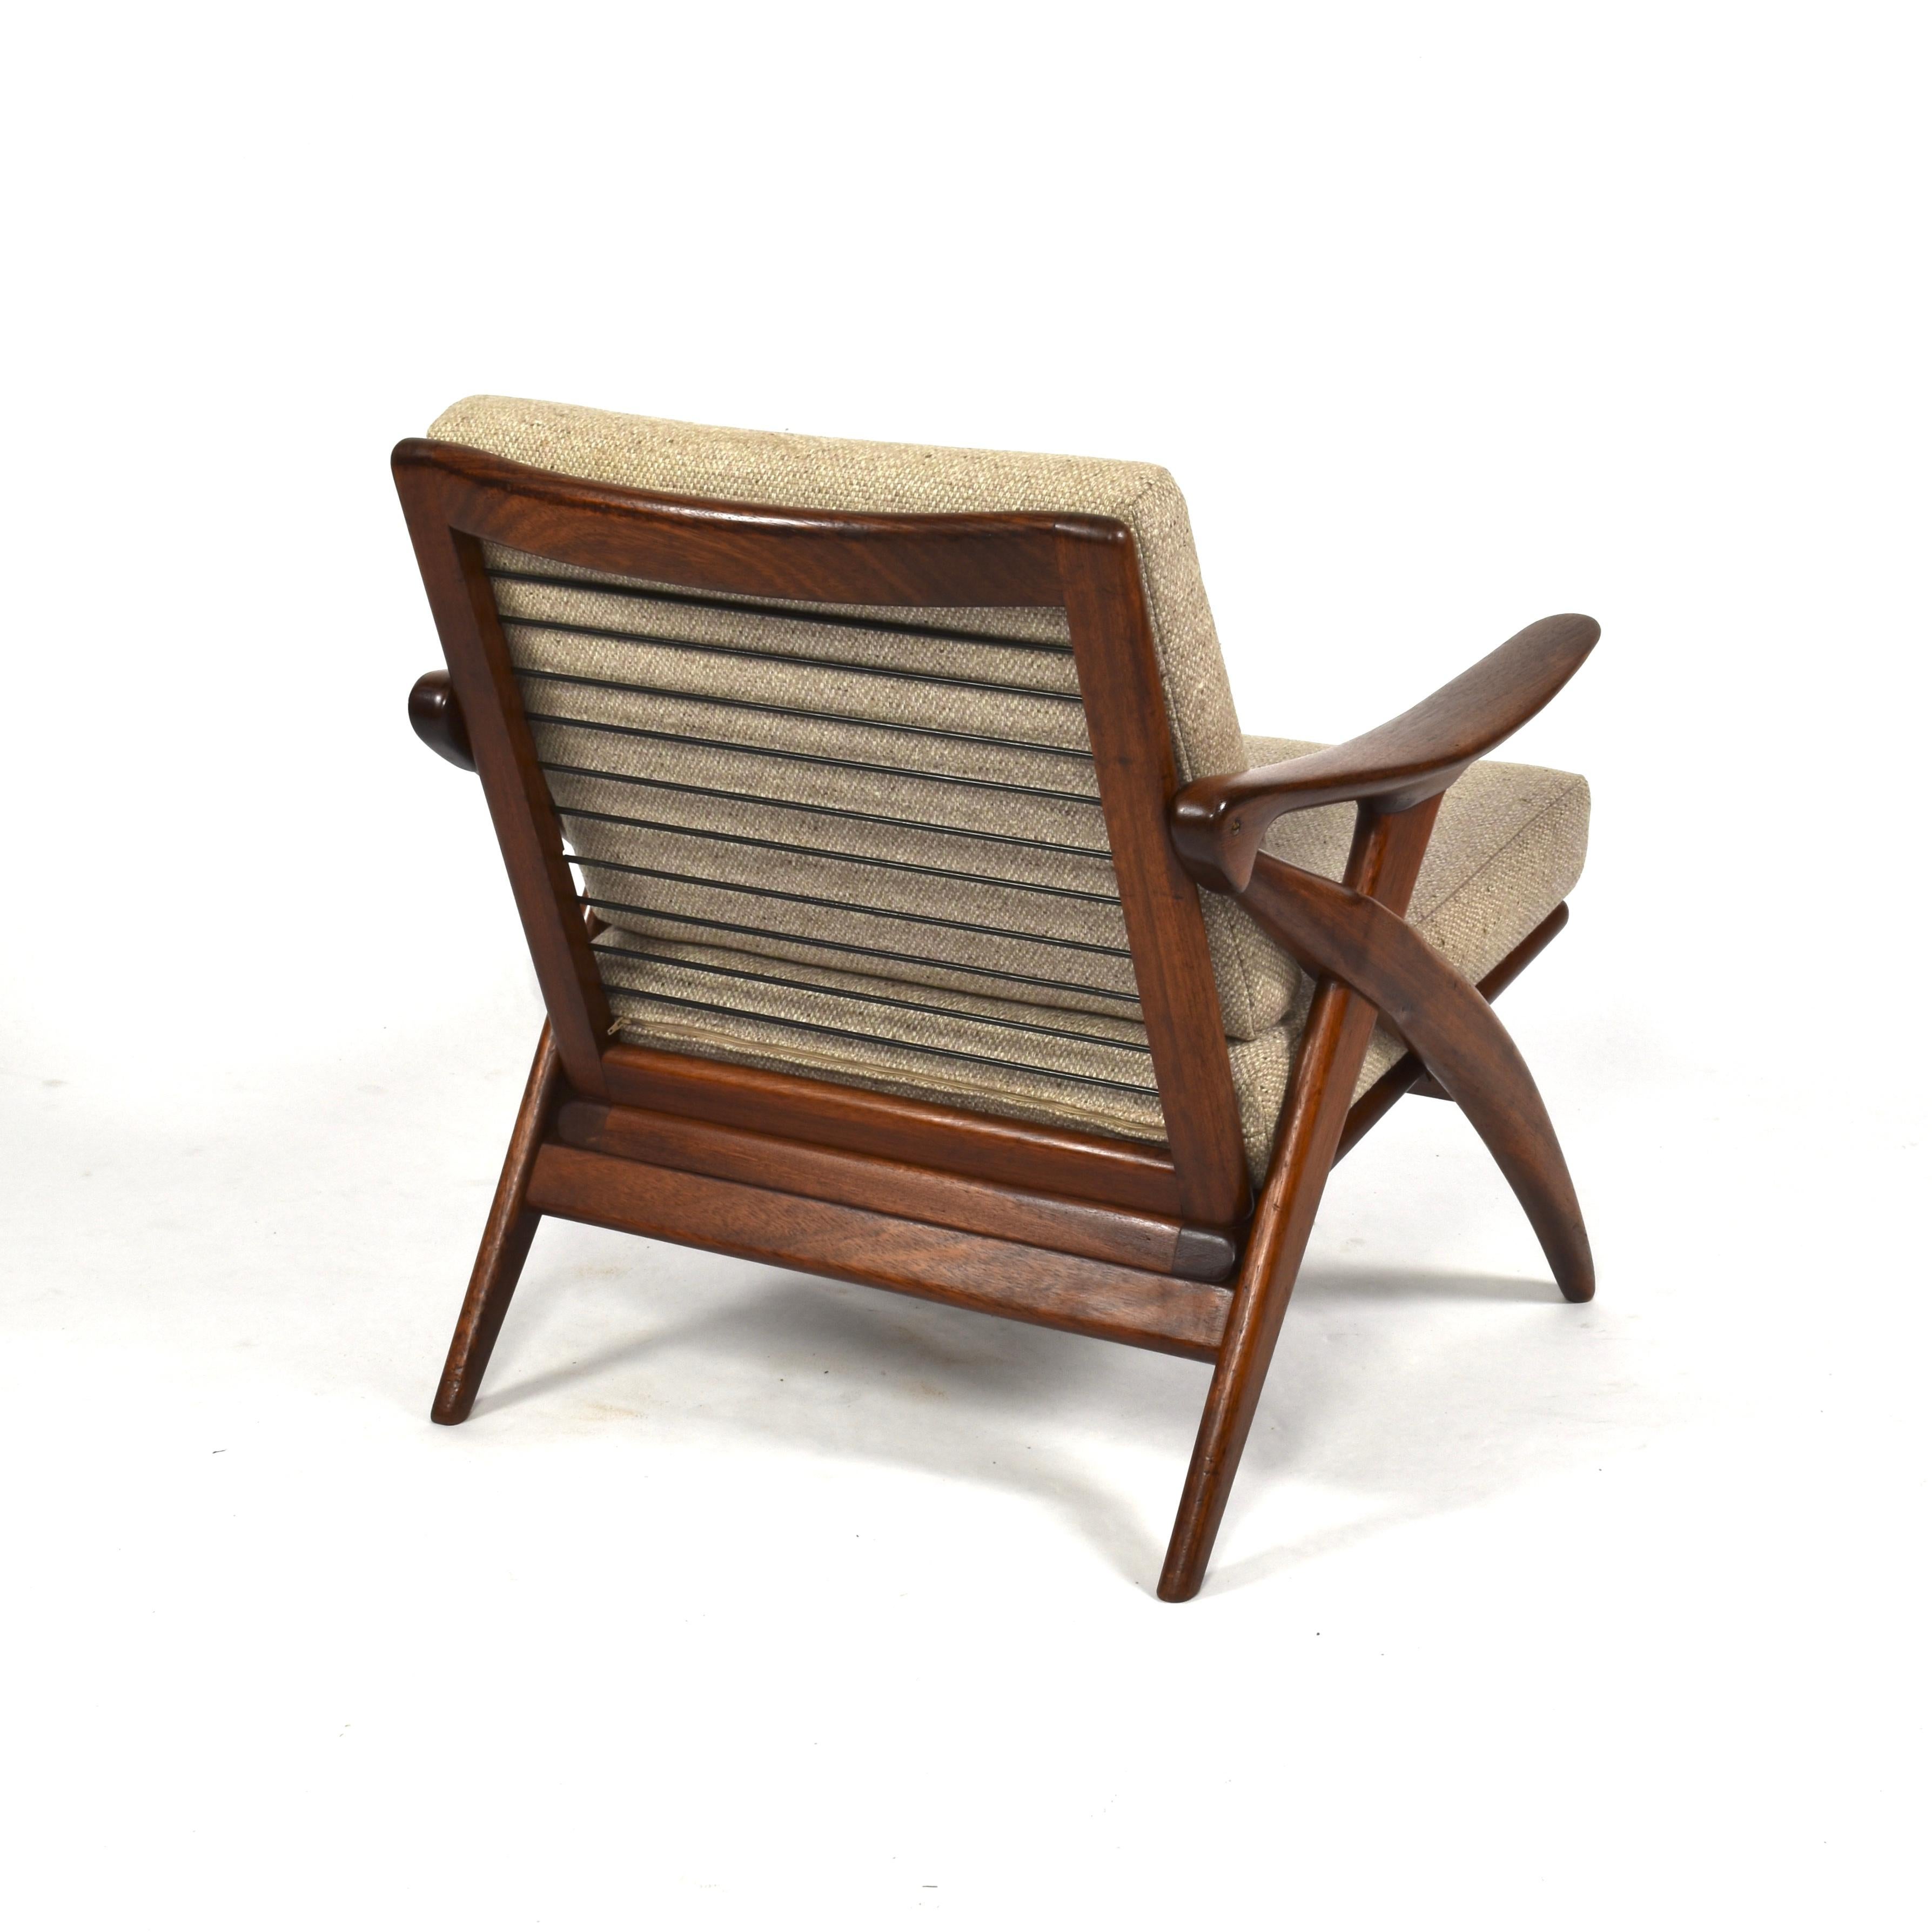 Dutch Teak Lounge Chair by De Ster Gelderland, Netherlands, circa 1960